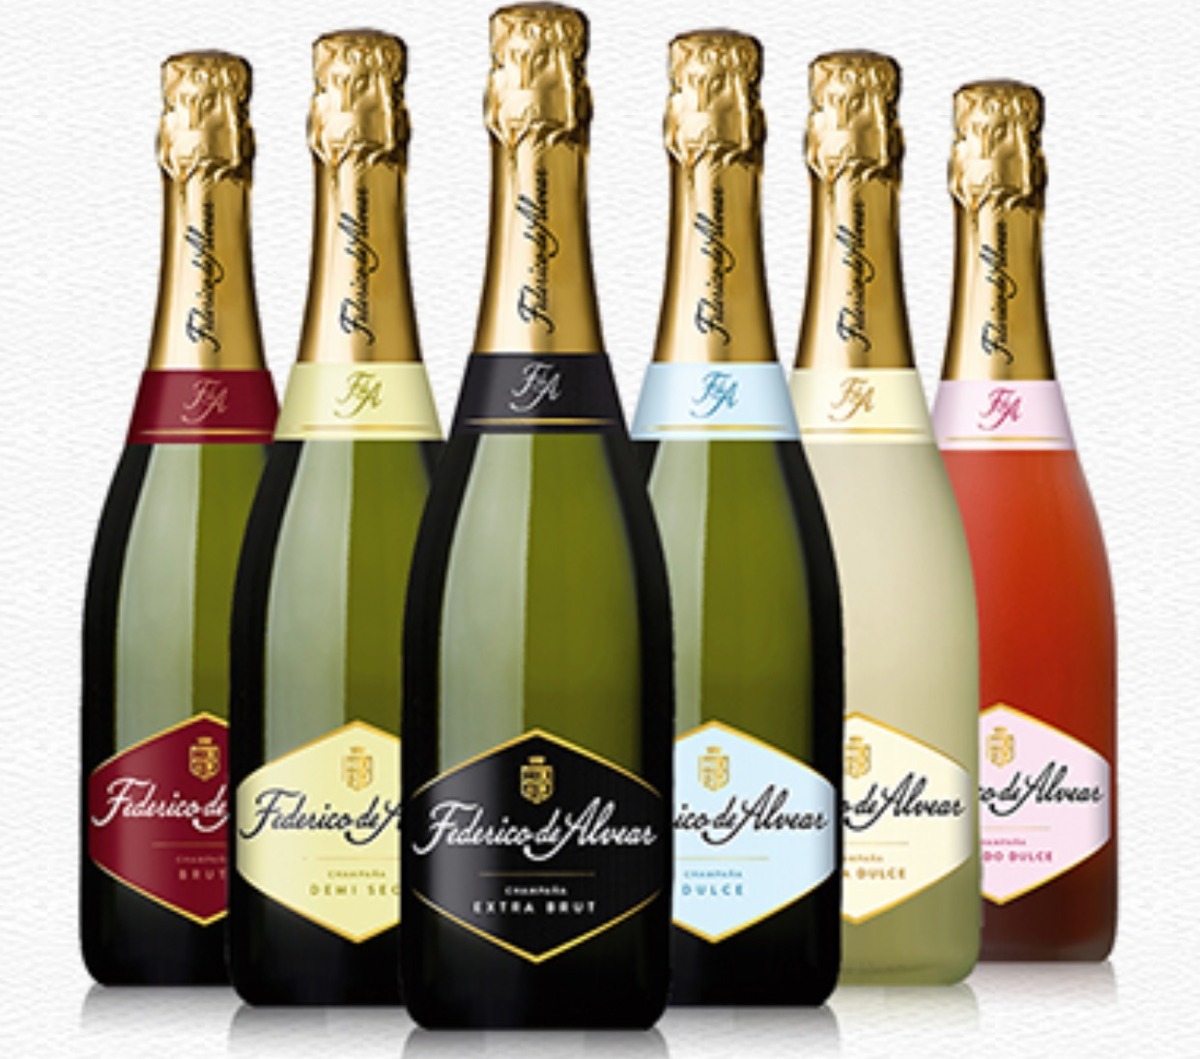 Federico de Alvear Extra Brut, una champaña francamente deliciosa